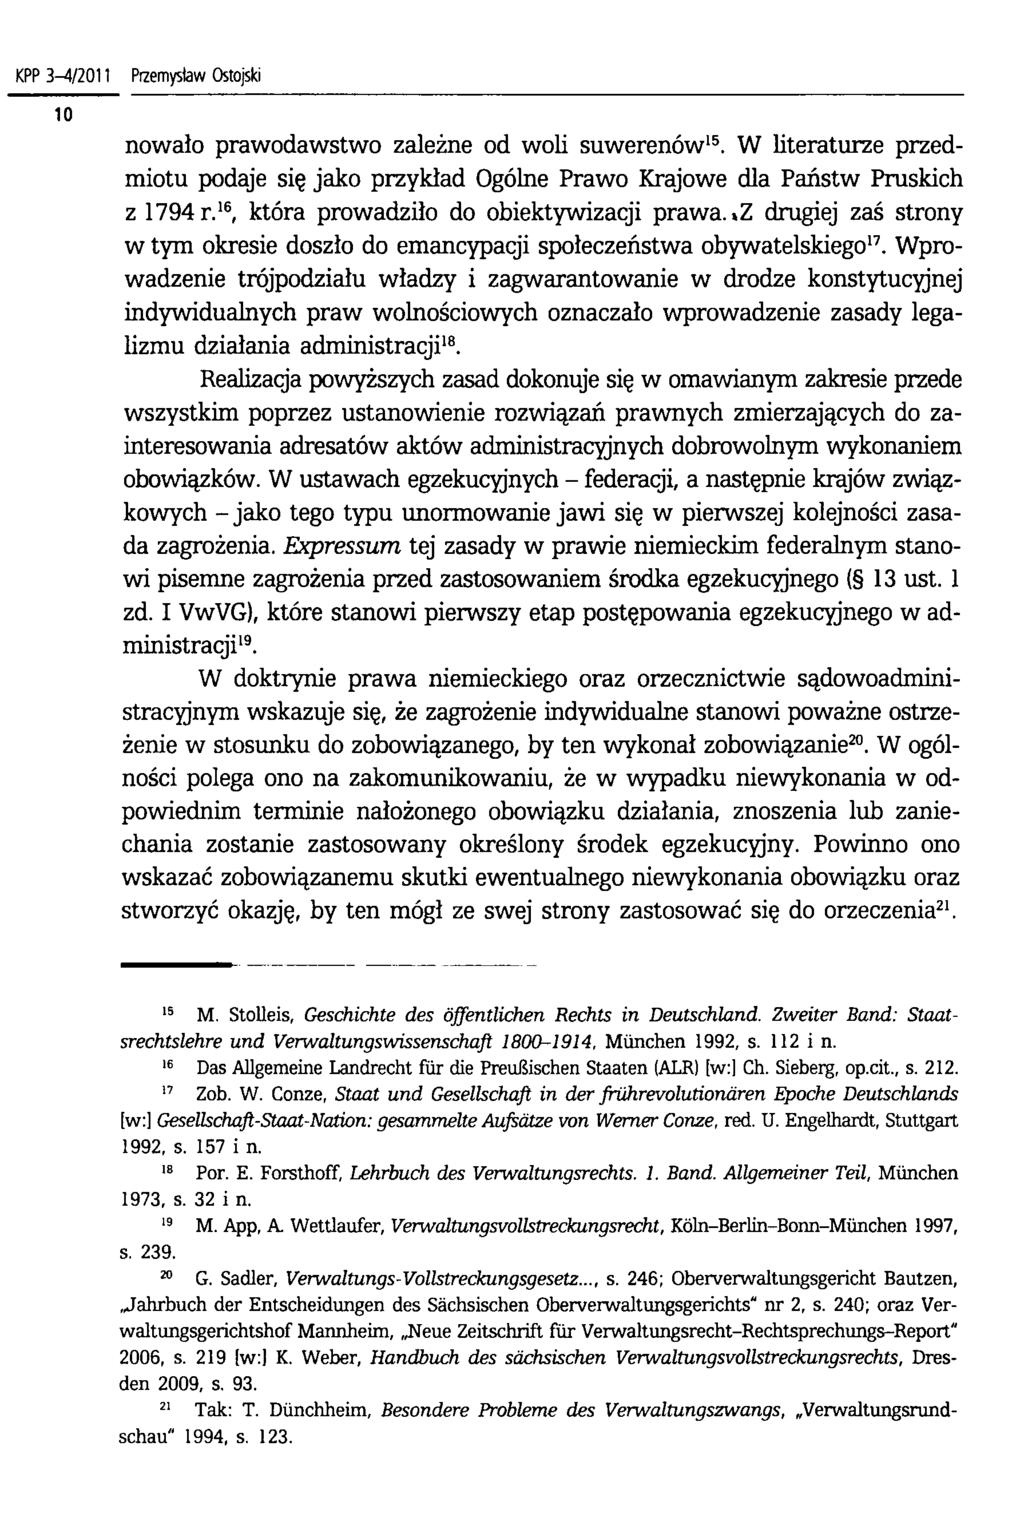 KPP 3-4/2011 Przemysław Ostojski nowało prawodawstwo zależne od woli suwerenów15. W literaturze przedmiotu podaje się jako przykład Ogólne Prawo Krajowe dla Państw Pruskich z 1794 r.